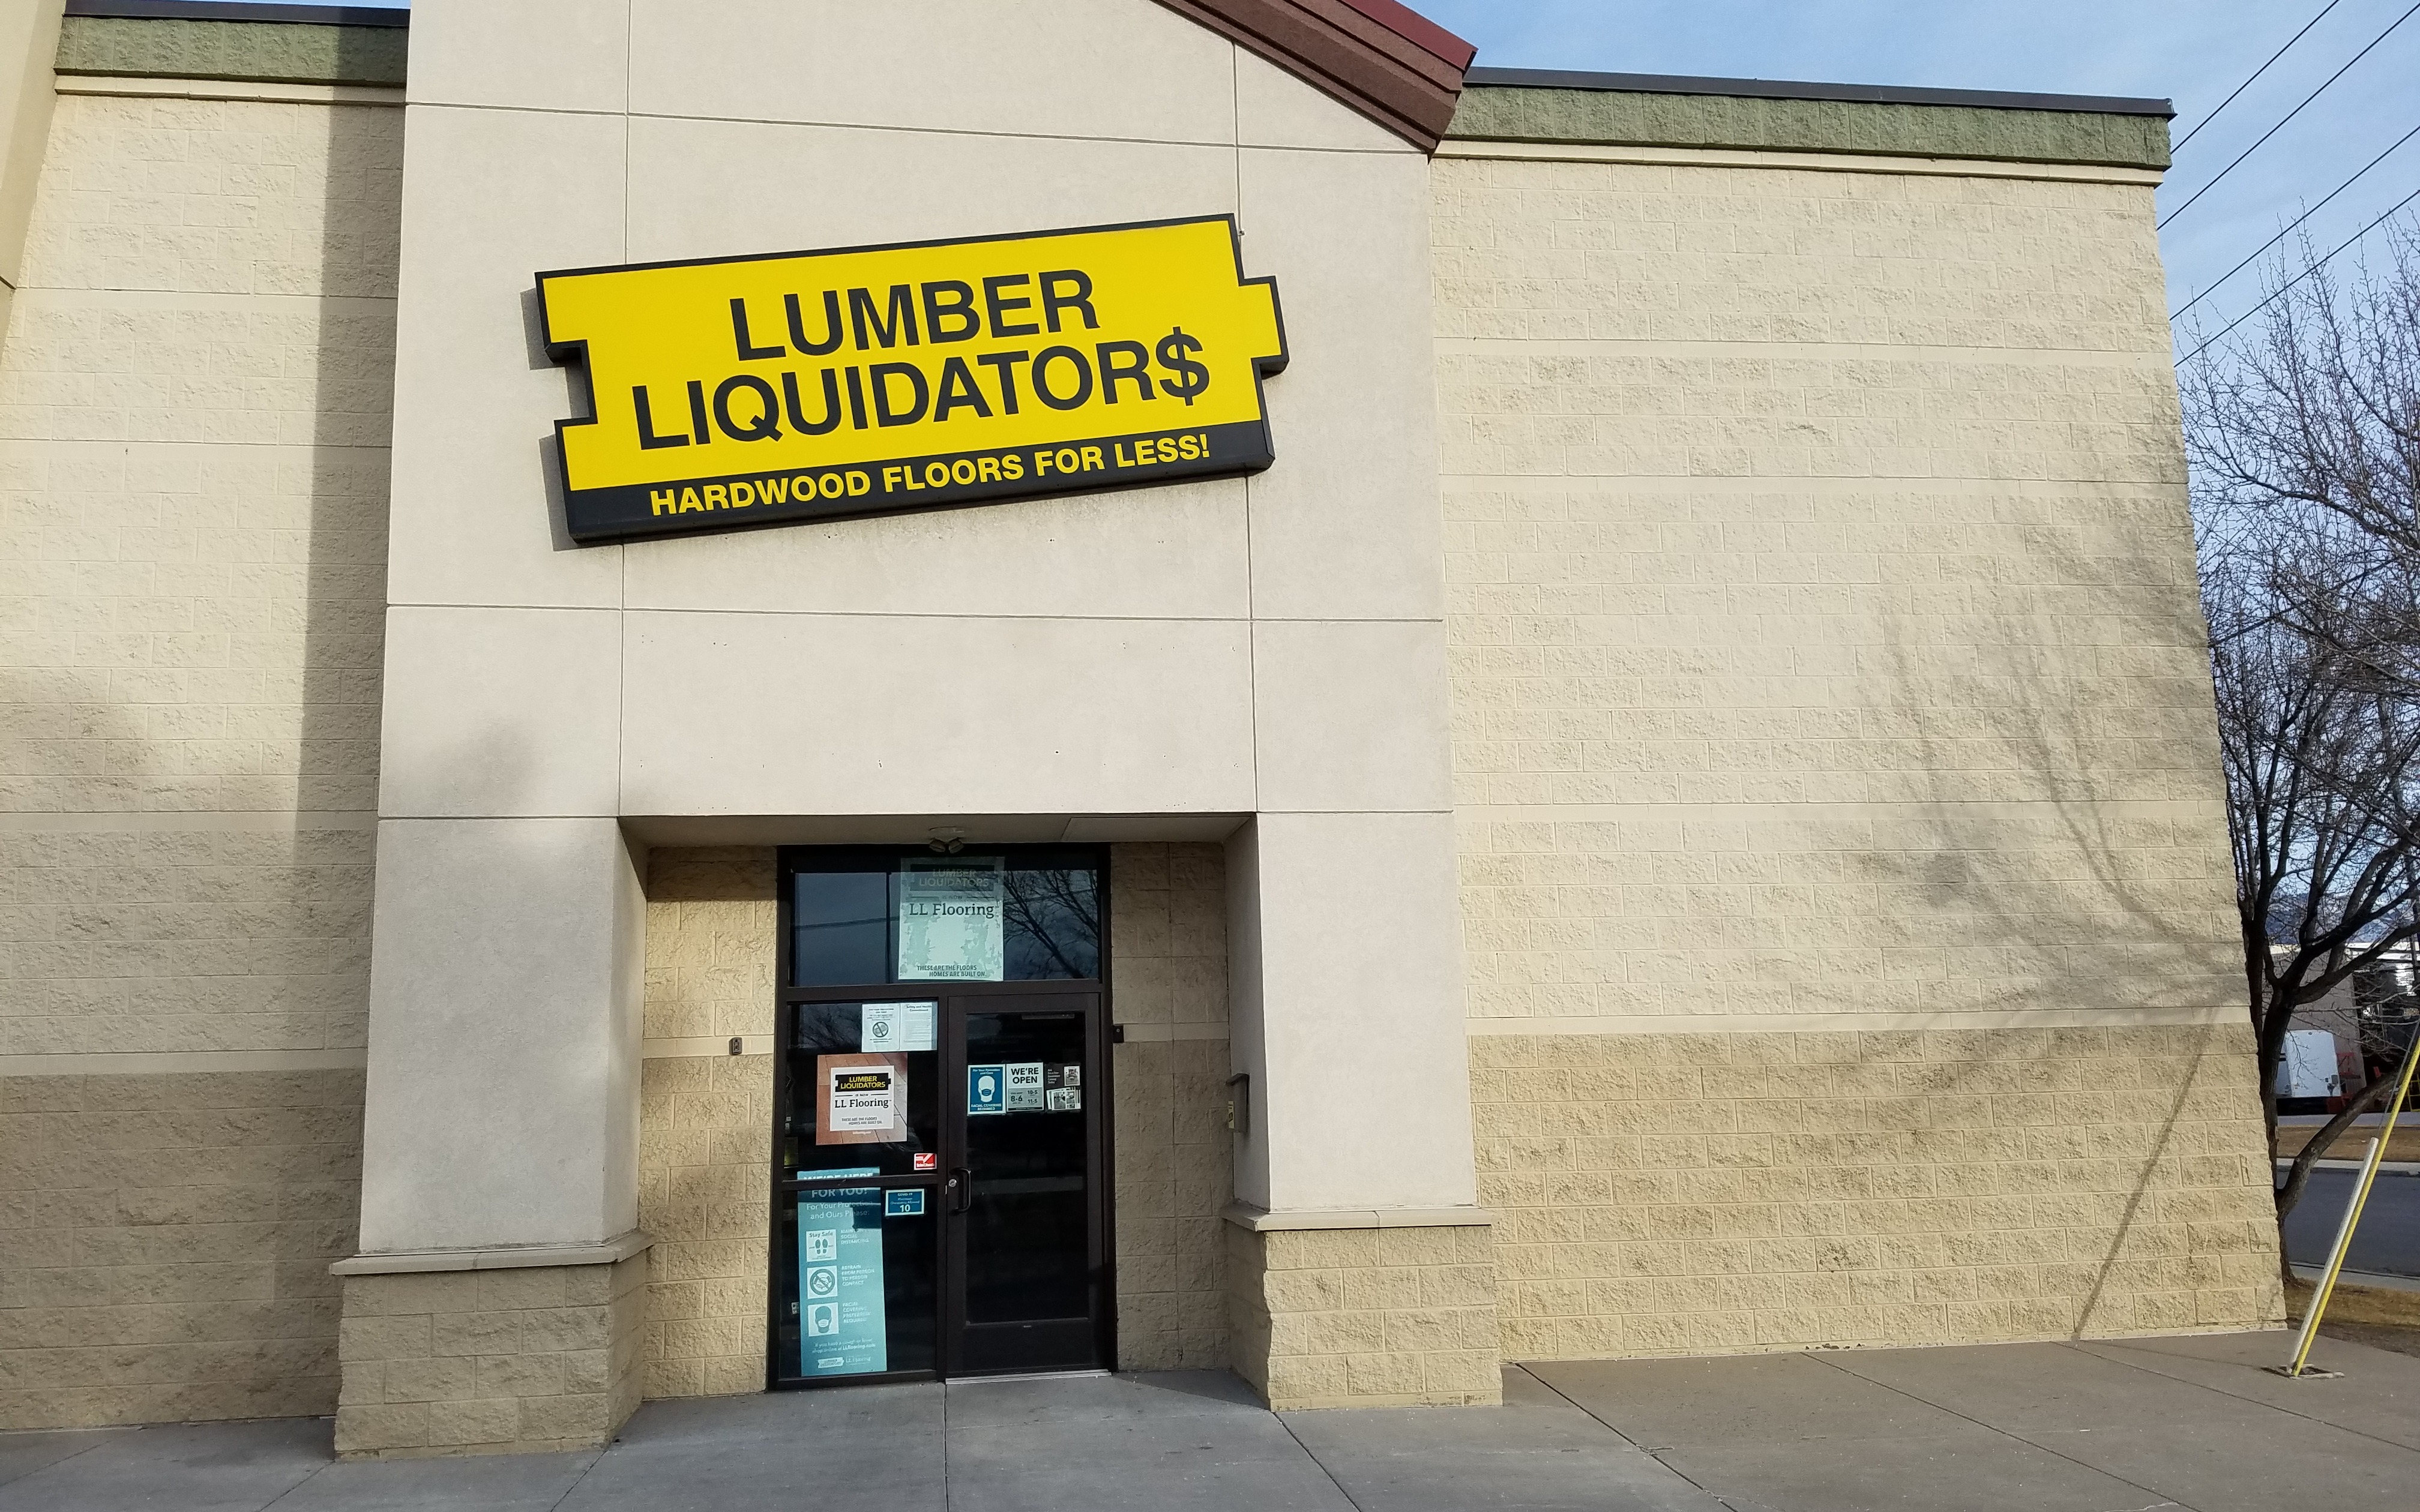 Ll Flooring Lumber Liquidators 1044, Hardwood Flooring Salt Lake City Utah